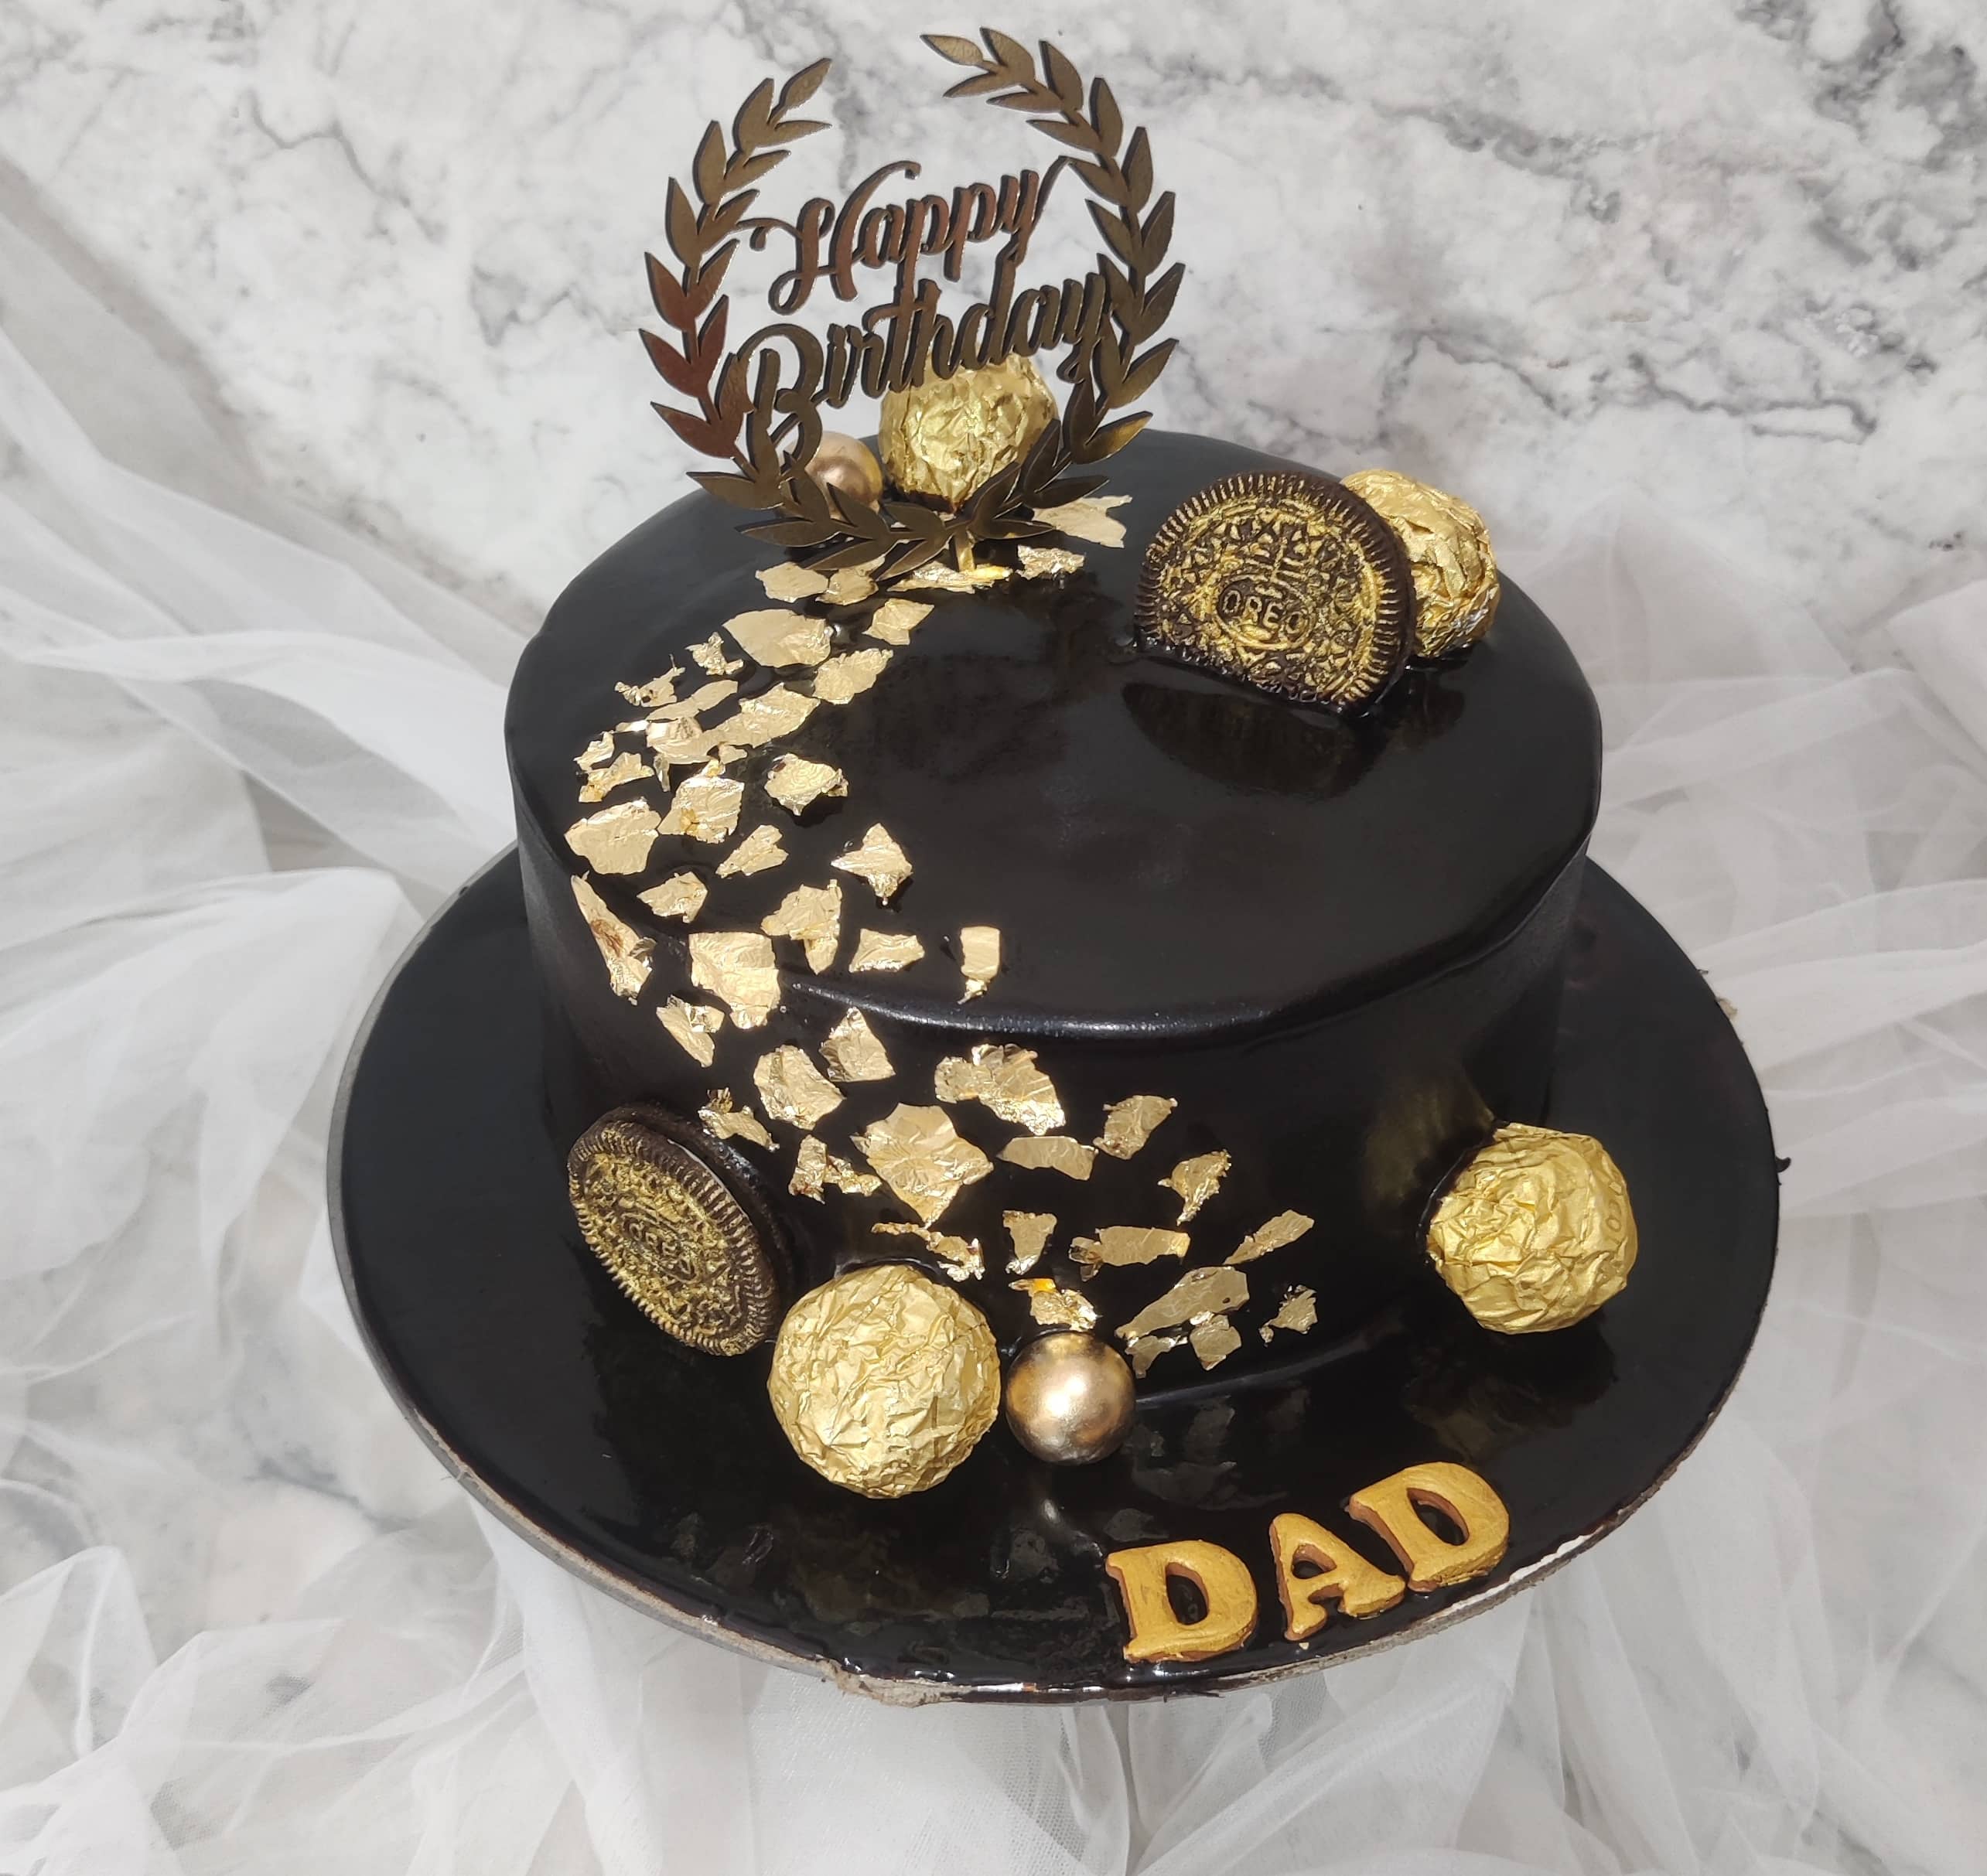 Buy/Send Super Dad Chocolate Cake- Half Kg Online- FNP